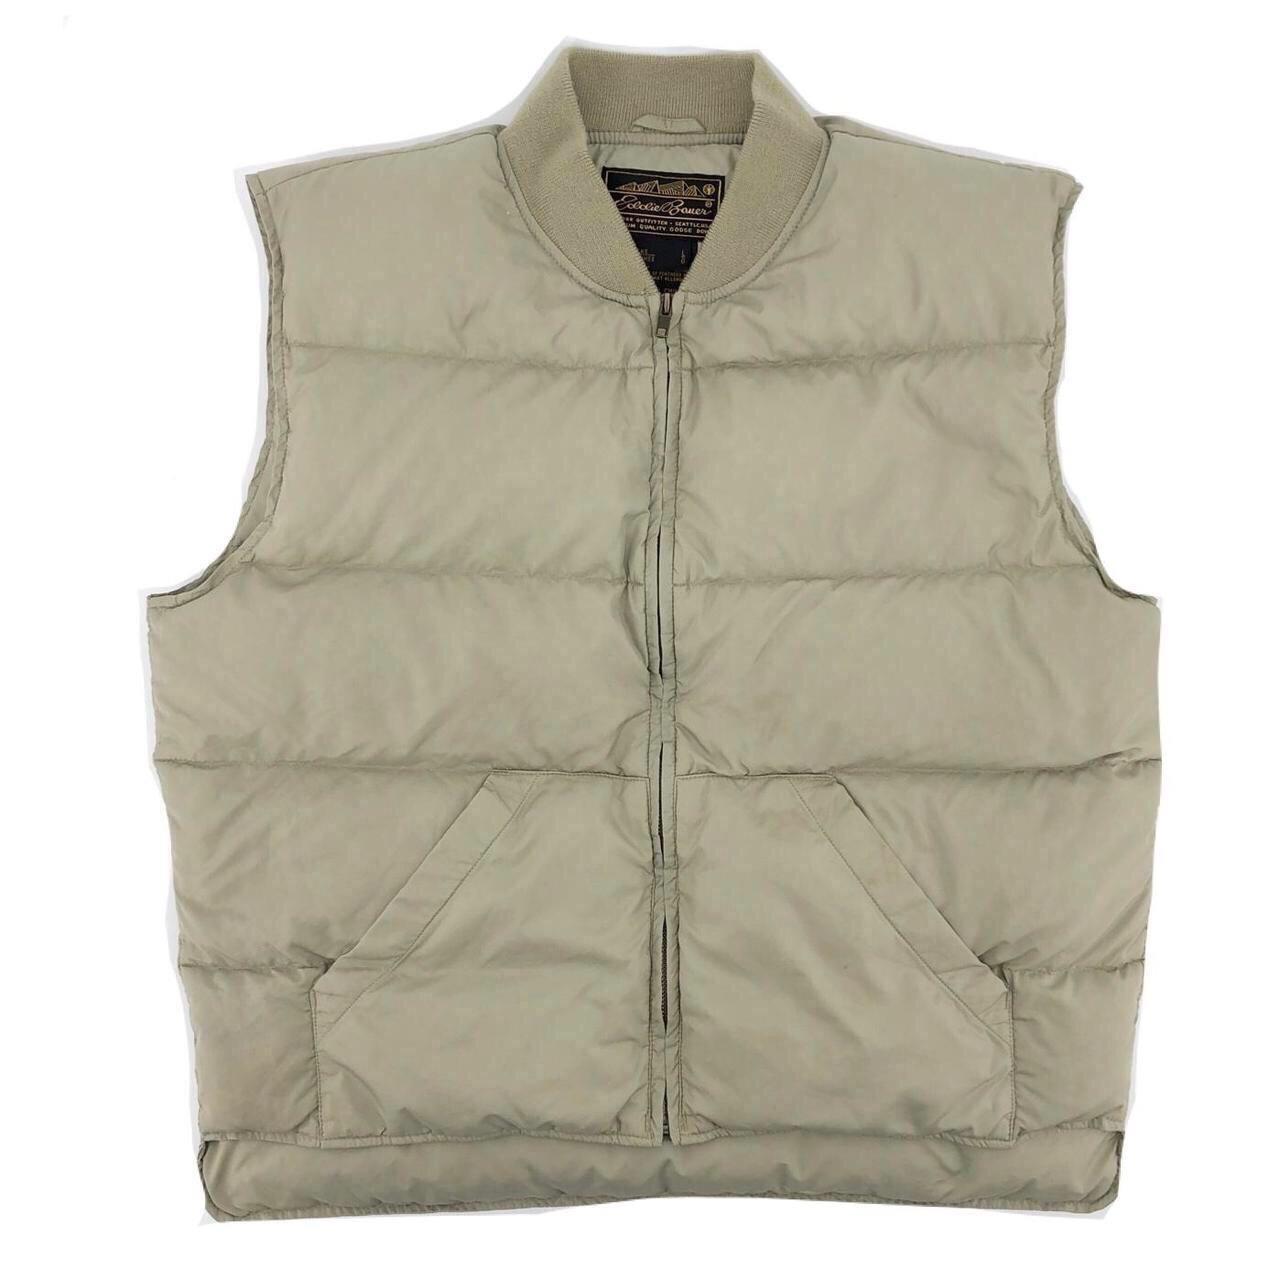 90s Eddie Bauer puffer vest 1990s vintage Nylon... - Depop